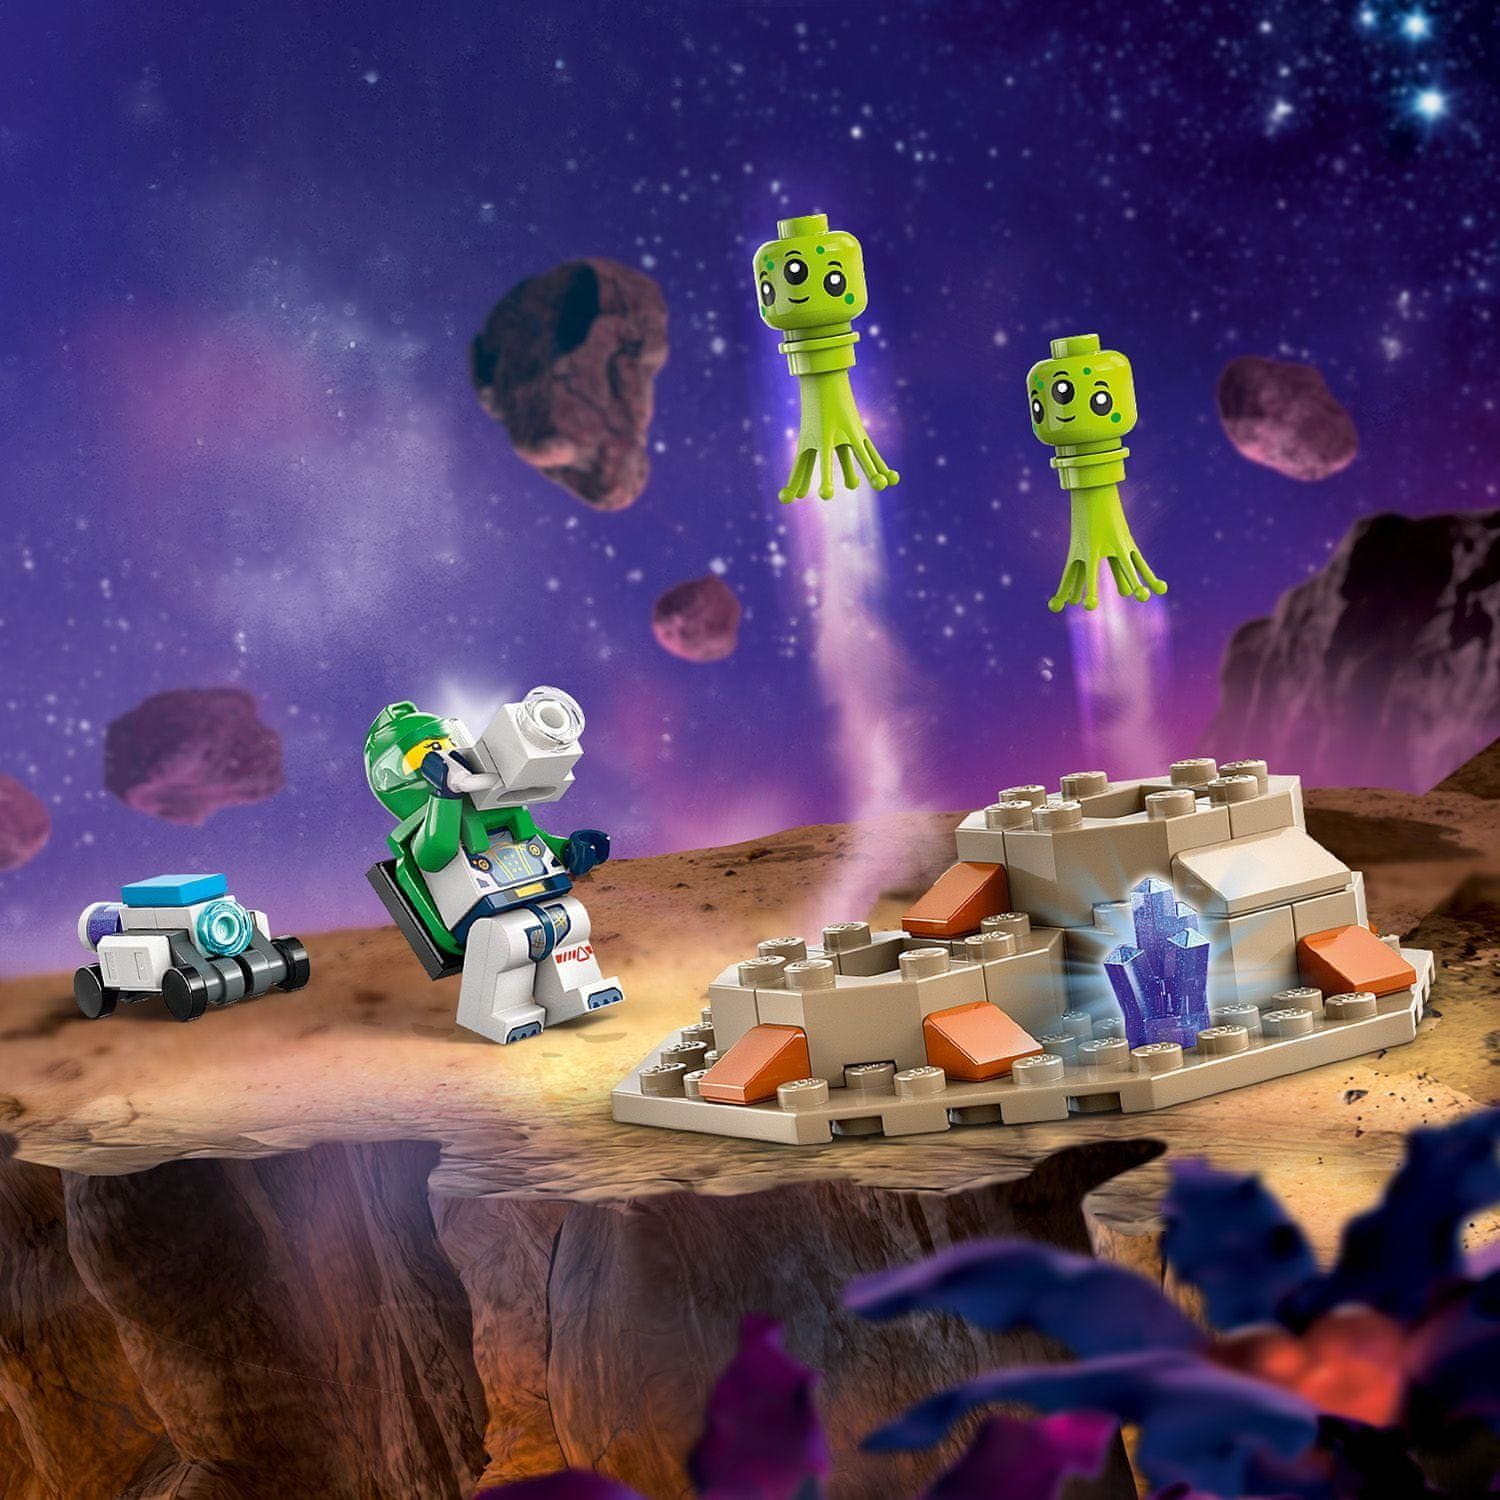 LEGO City 60431 Průzkumné vesmírné vozidlo a mimozemský život